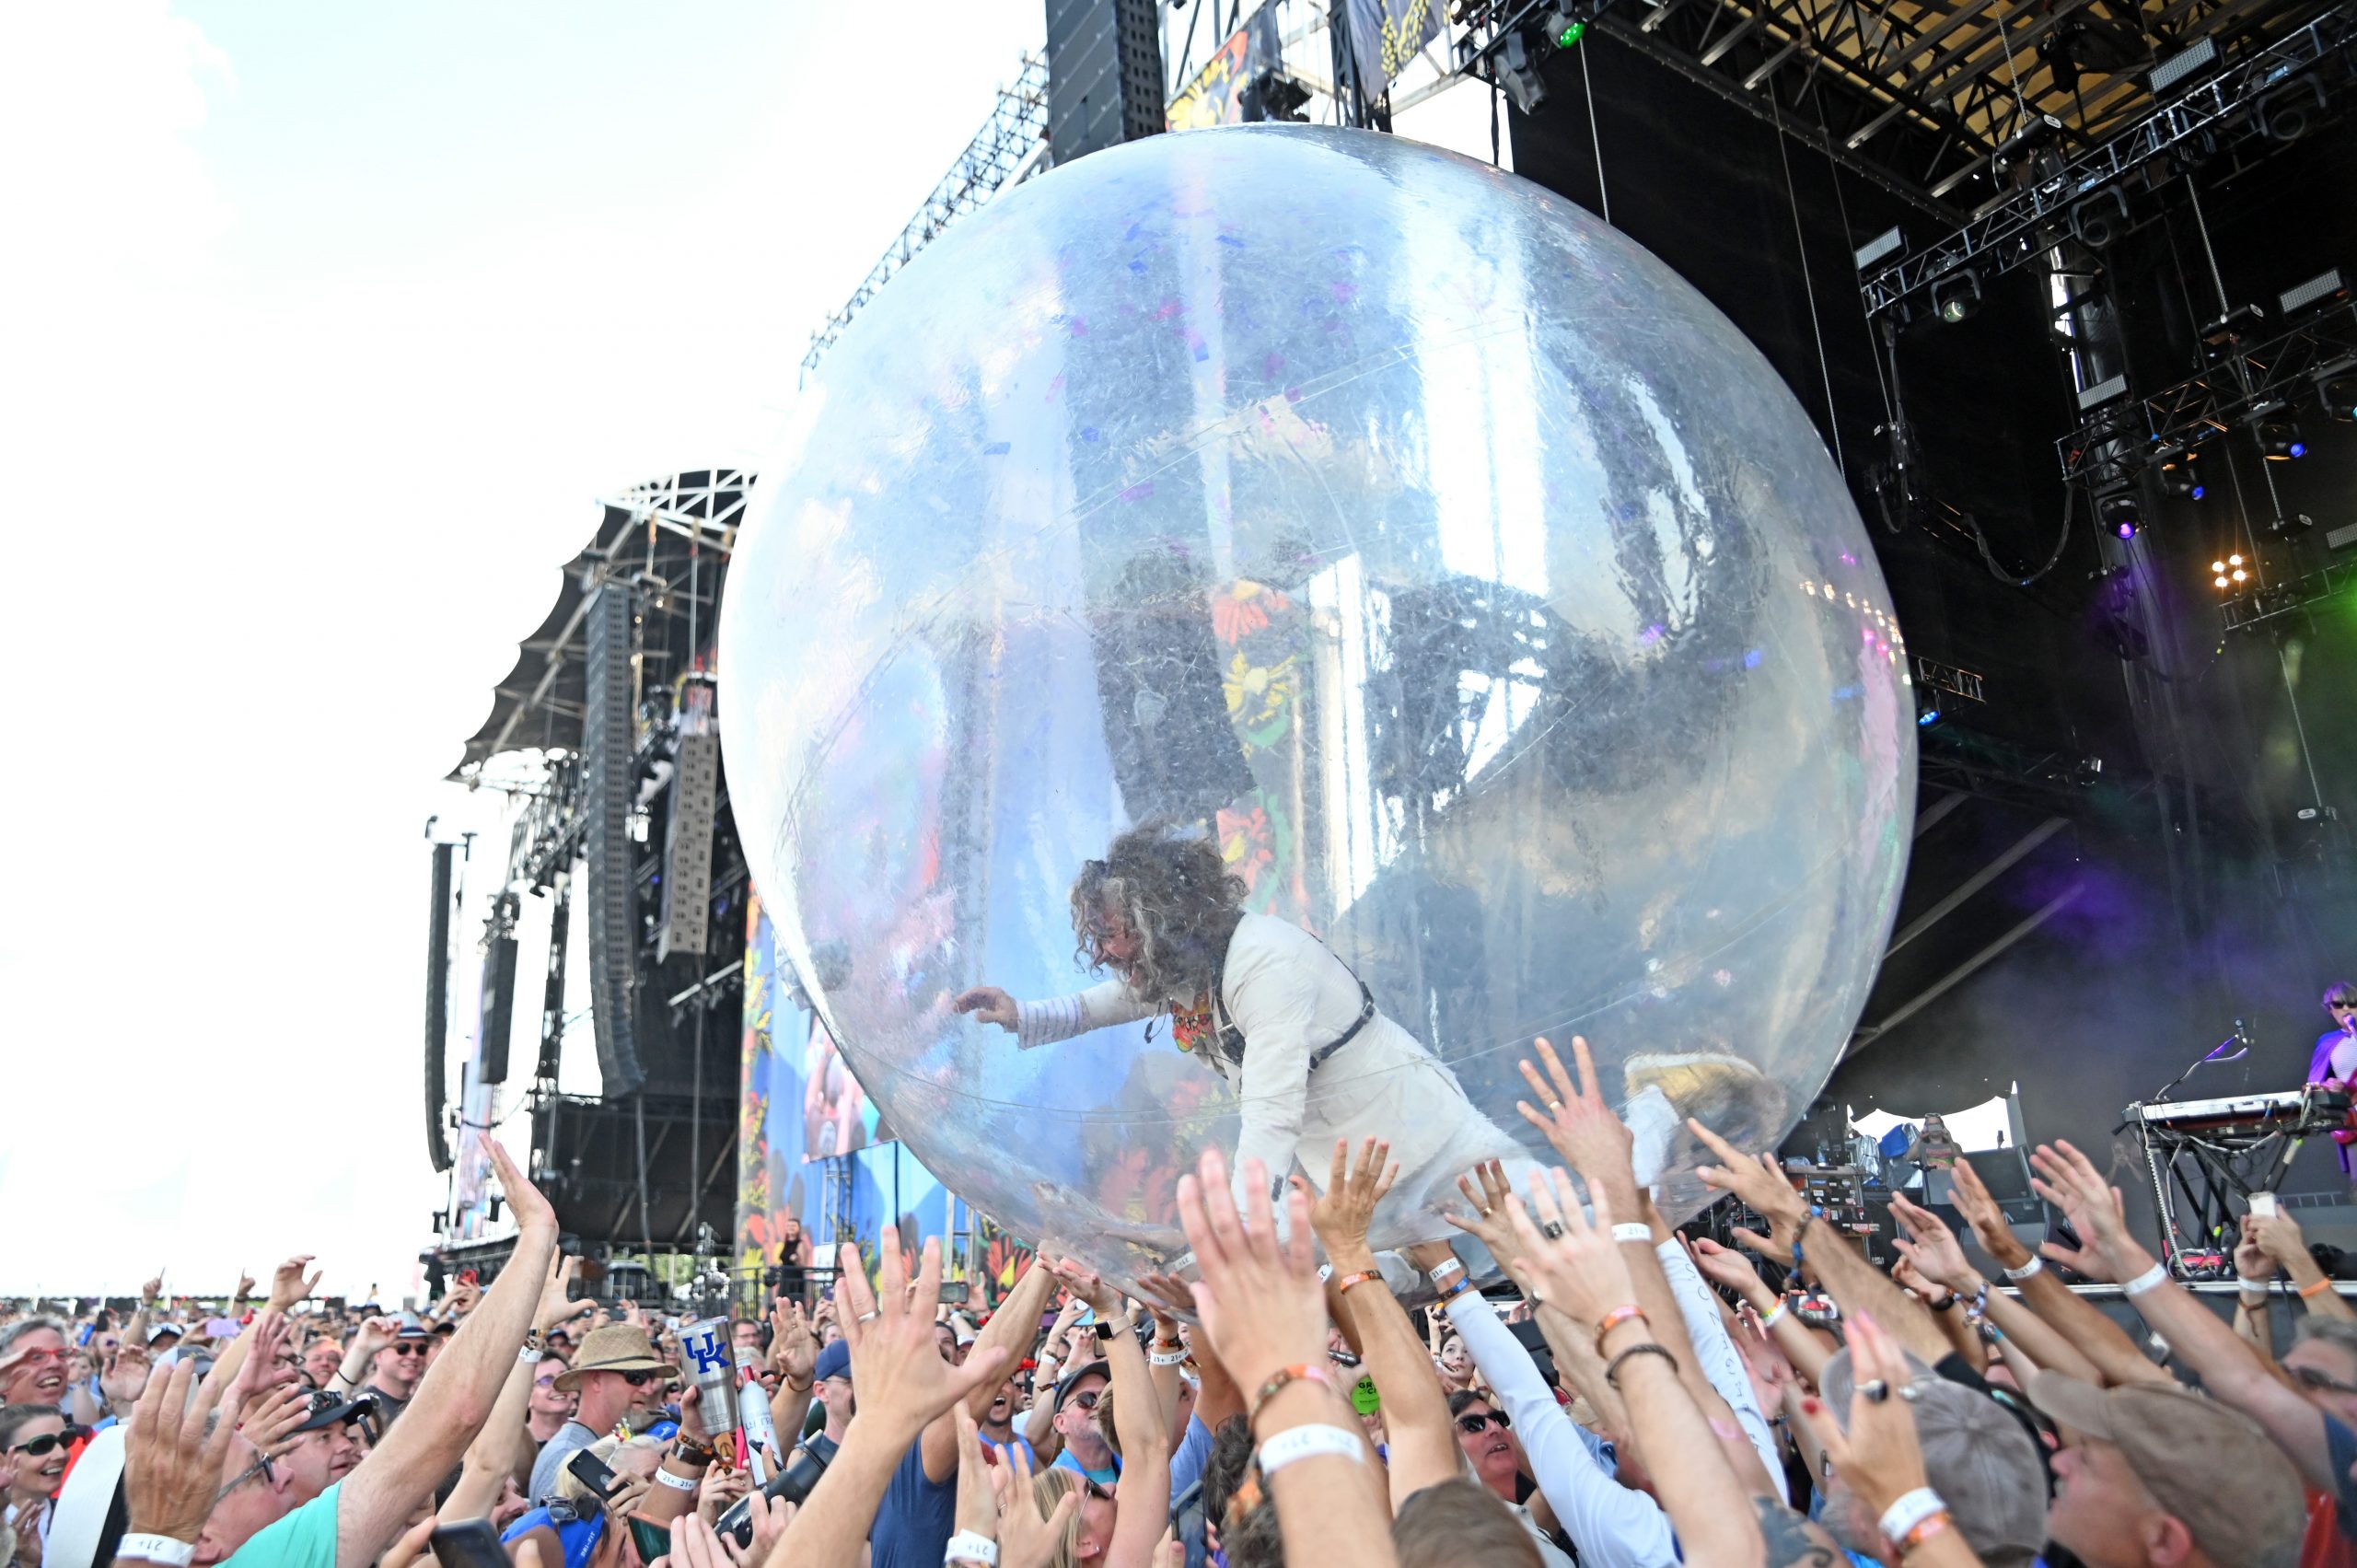 ¡Los conciertos en burbujas de plástico de The Flaming Lips ya son una realidad!